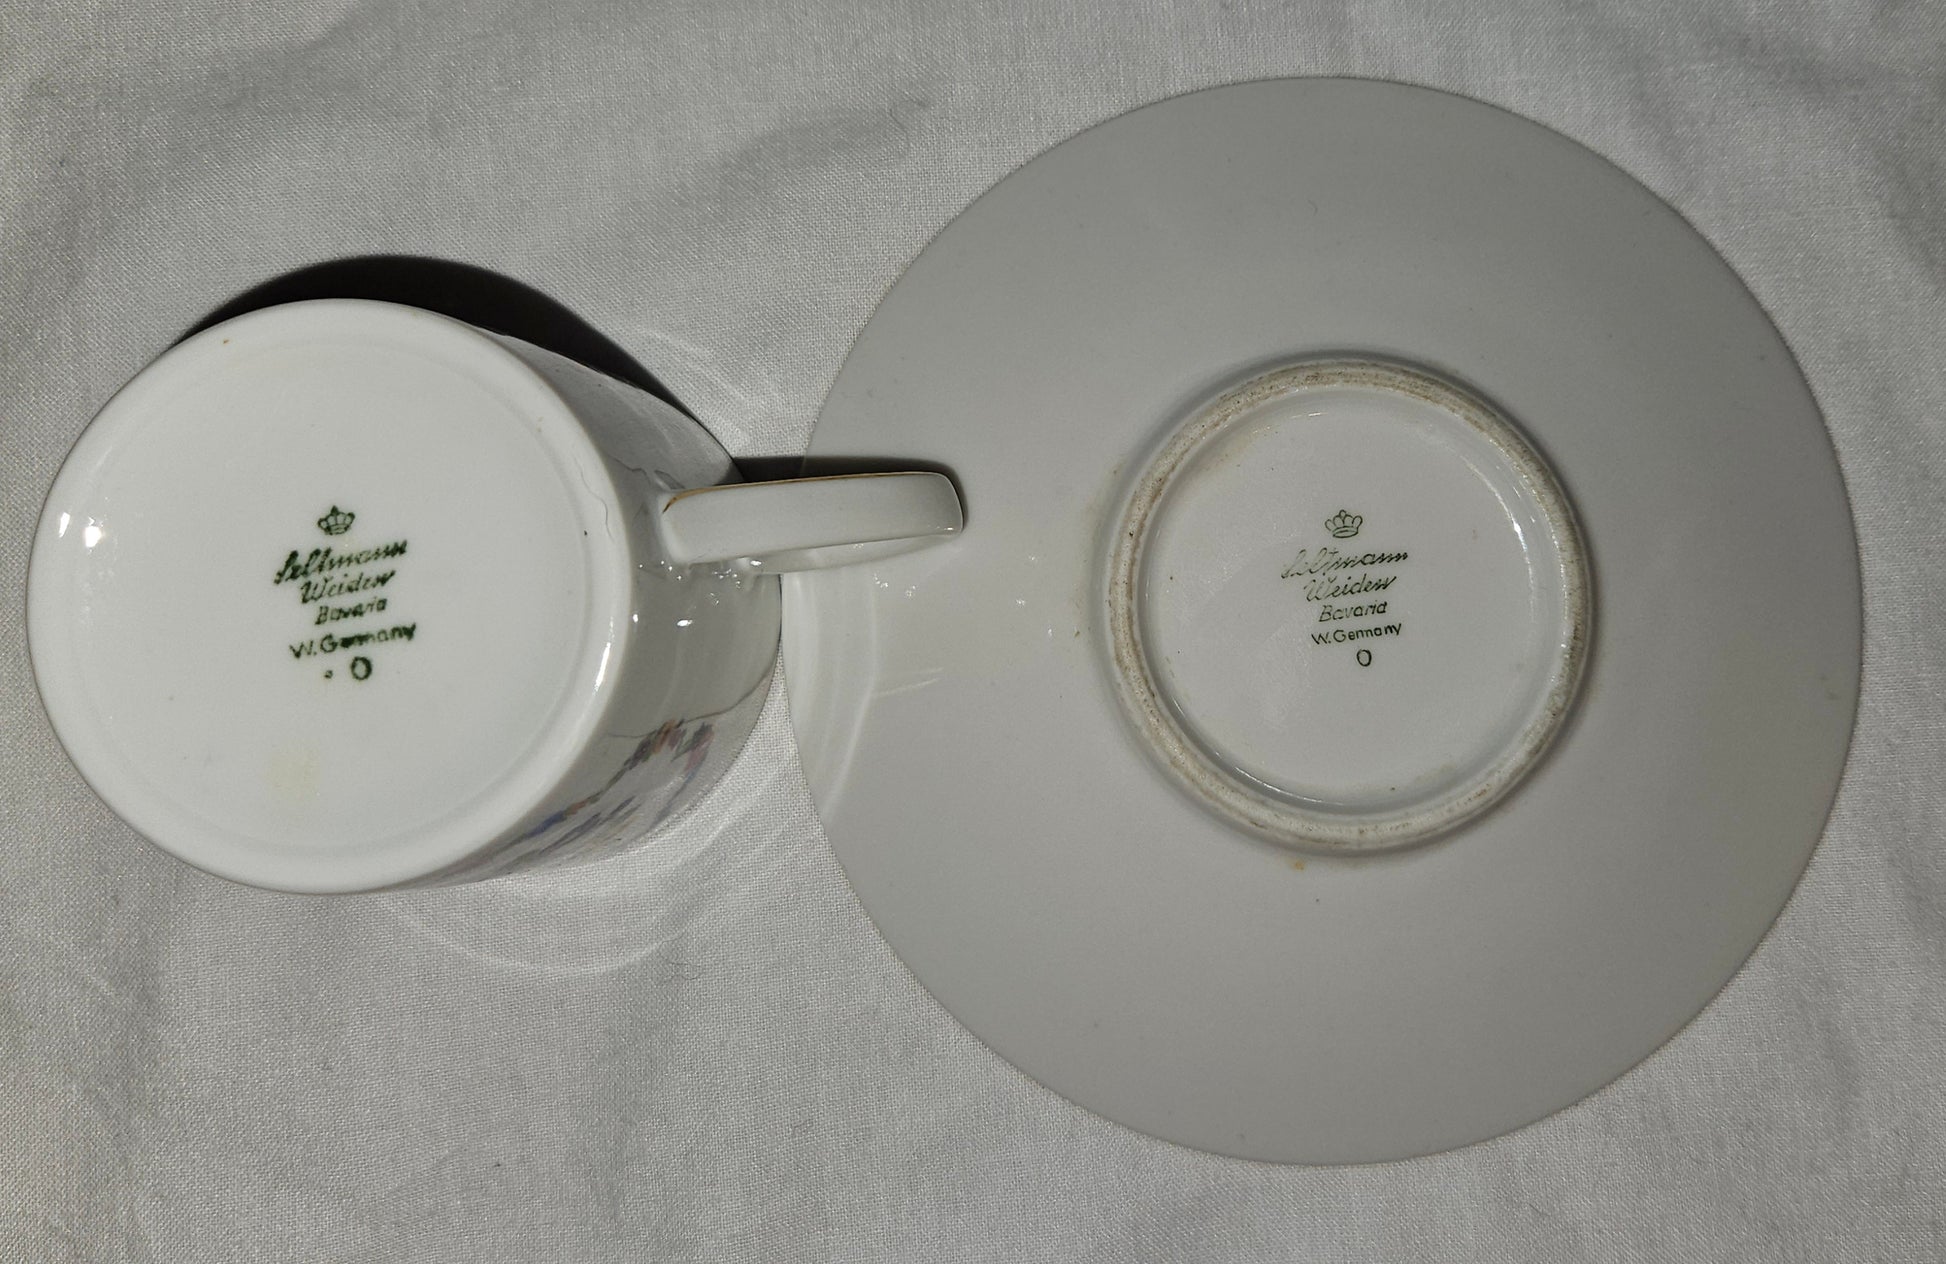 Seltmann Weiden German demitasse teacup and saucer bottom view